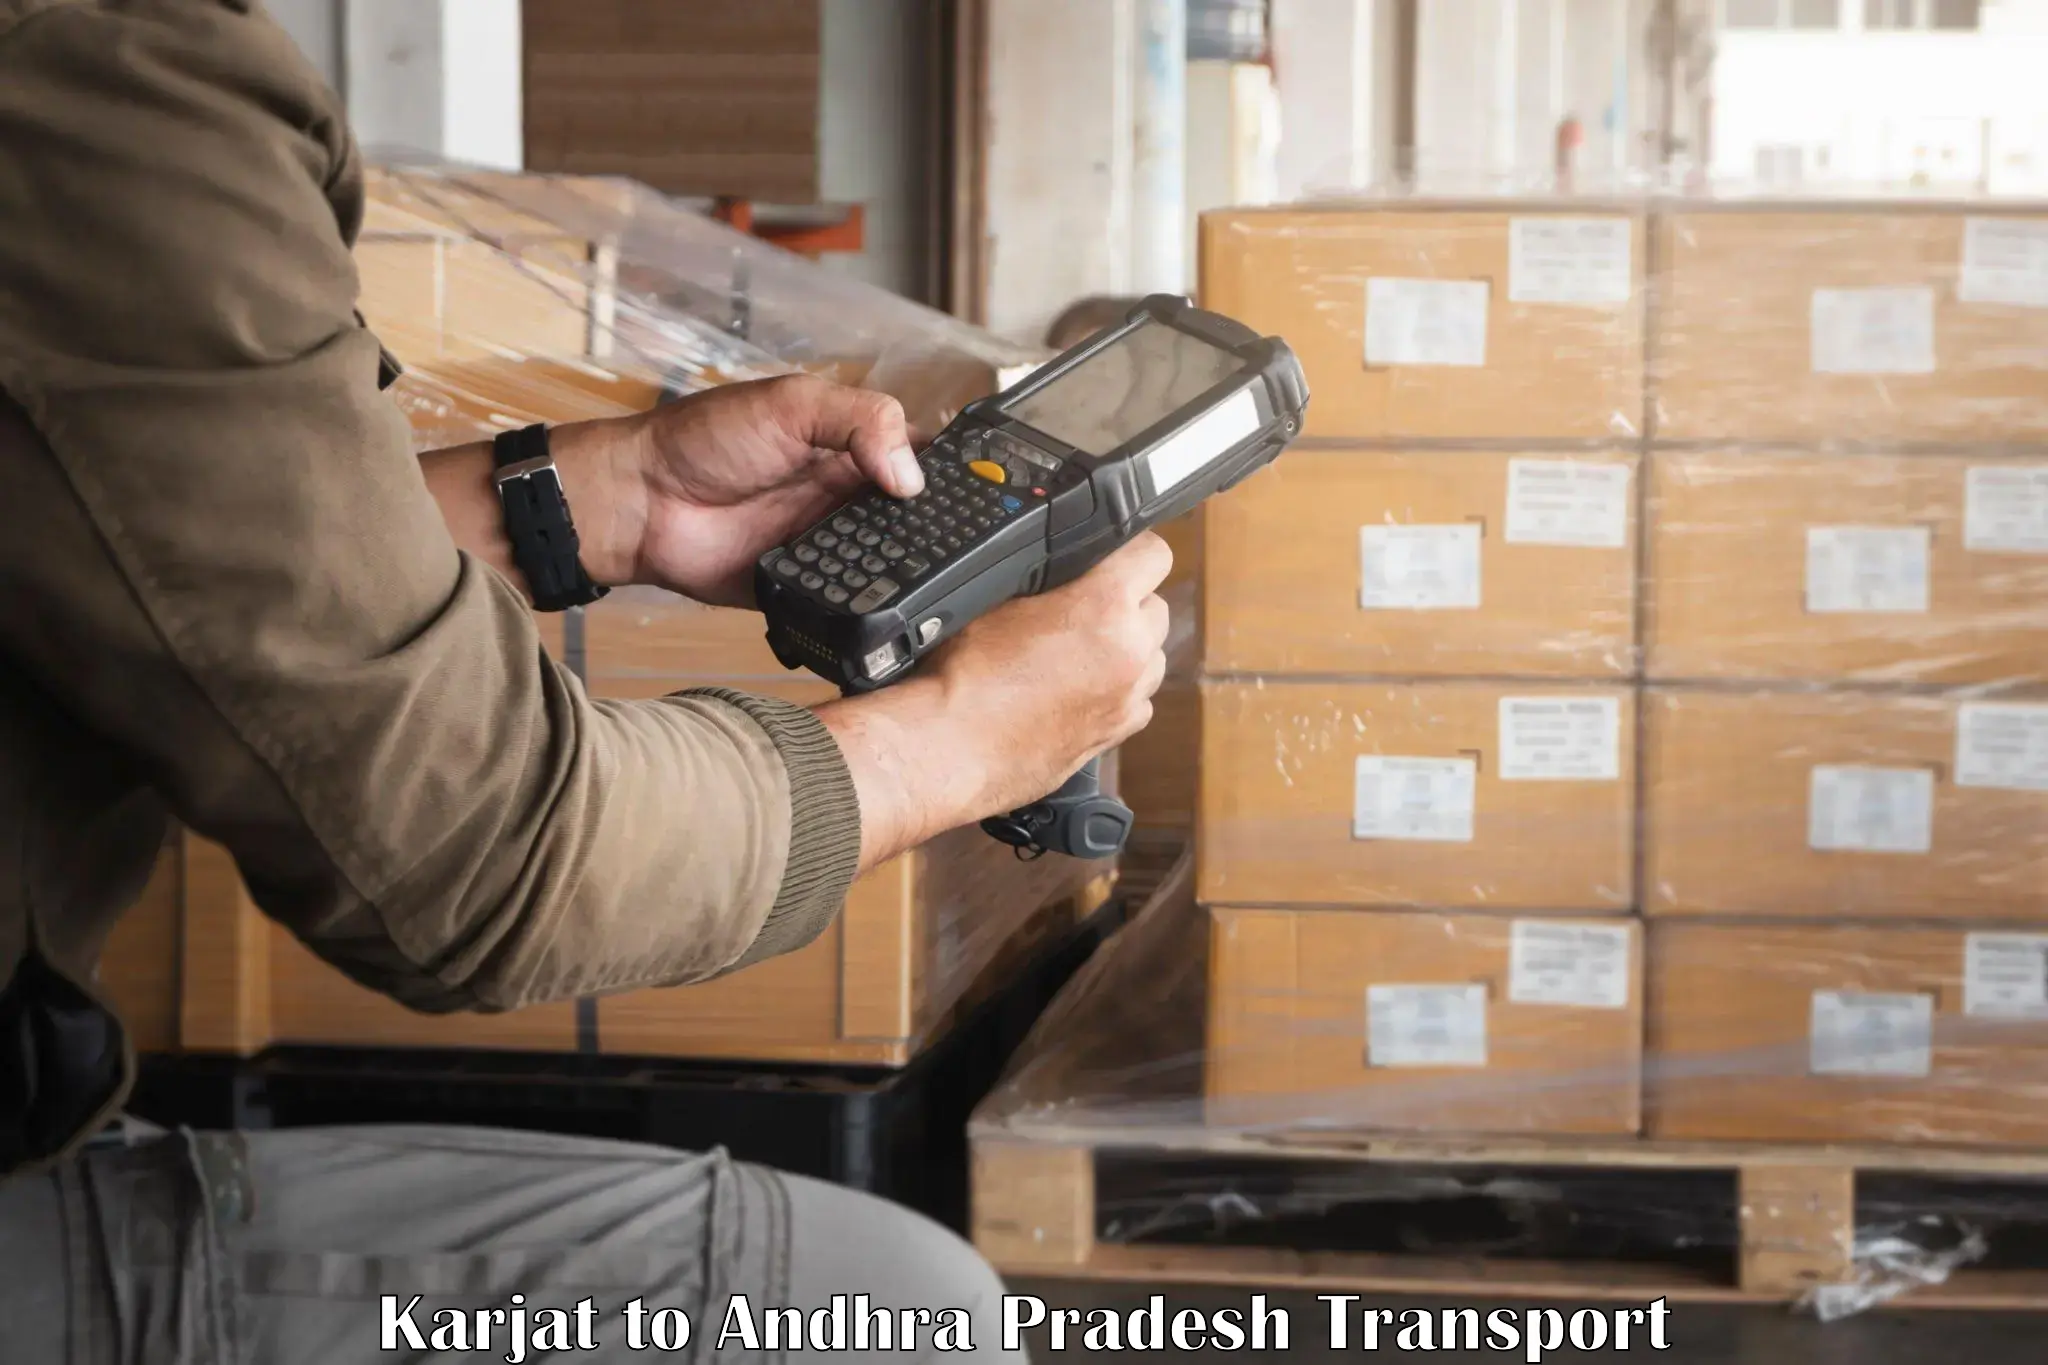 Air cargo transport services Karjat to Malikipuram